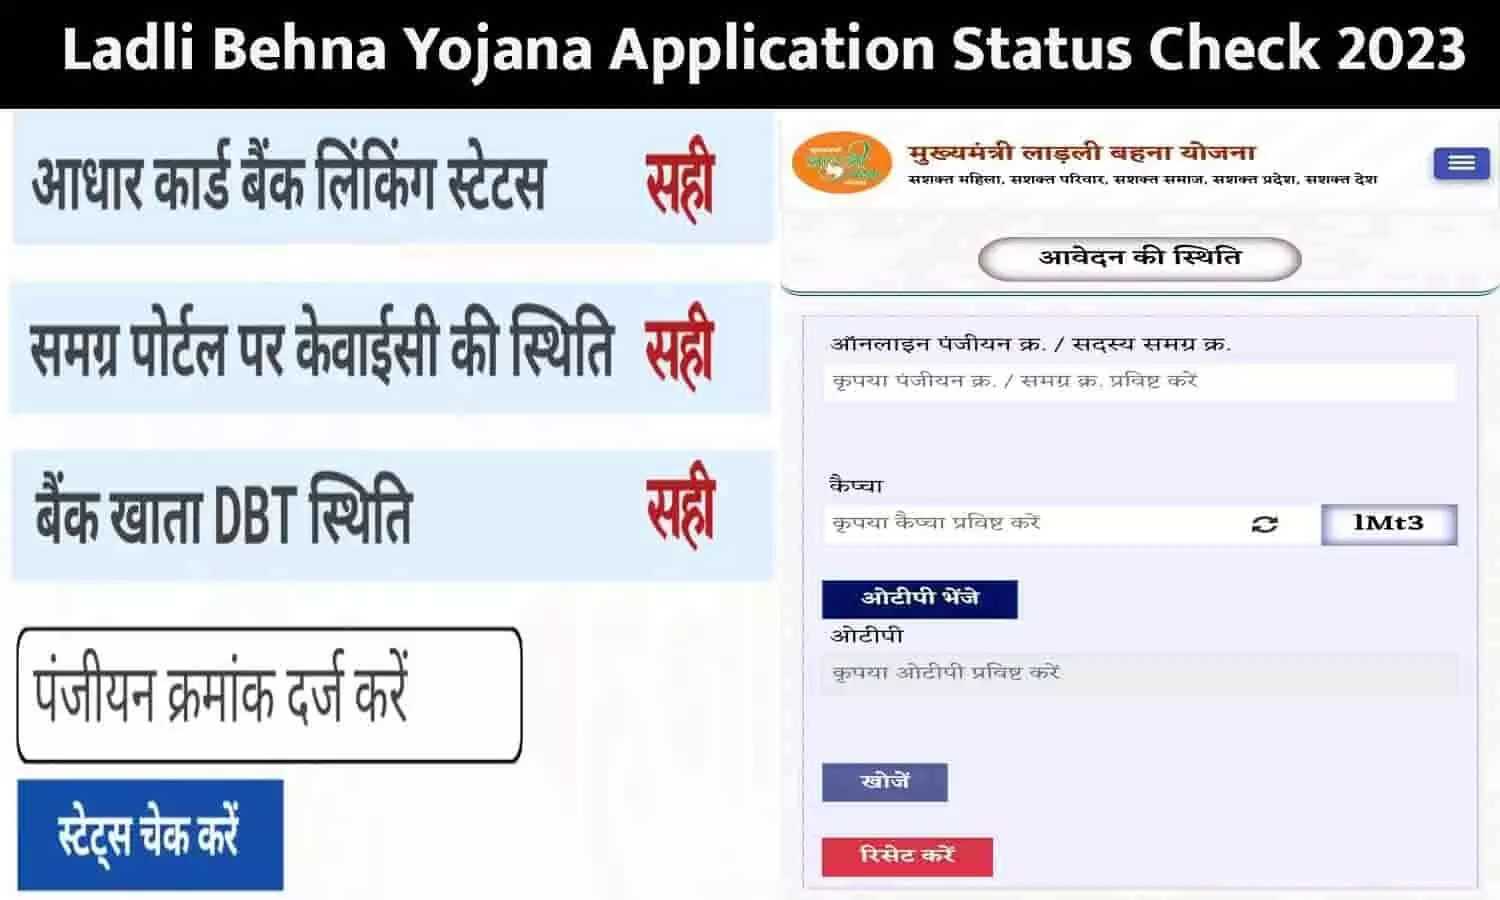 Ladli Behna Yojana Application Status Check: जिसके स्टेटस में दिख रहा है 3 चीज़े सही, उन्हें 10 जून को मिलेगा ₹1000, यहां से अभी करें चेक